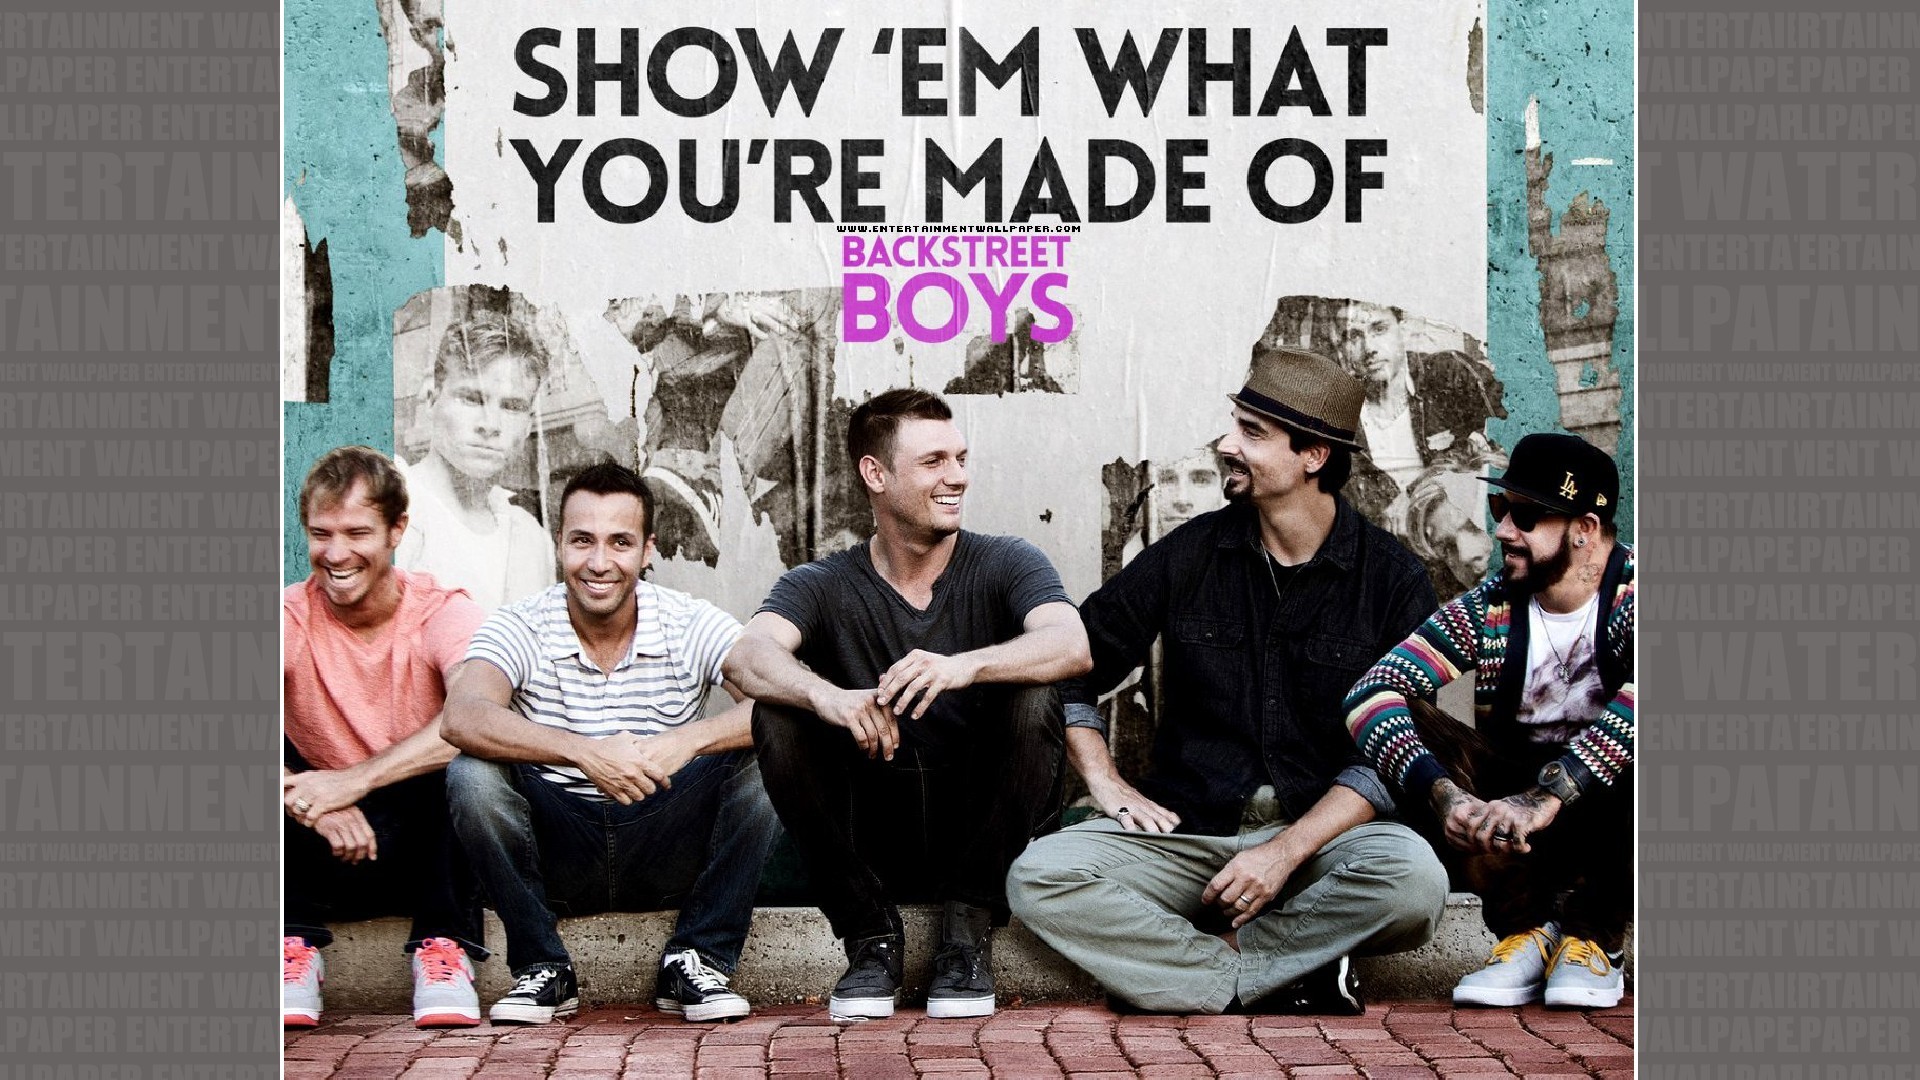 1920x1080 Backstreet Boys: Show 'Em What You're Made Of Wallpaper - Original size